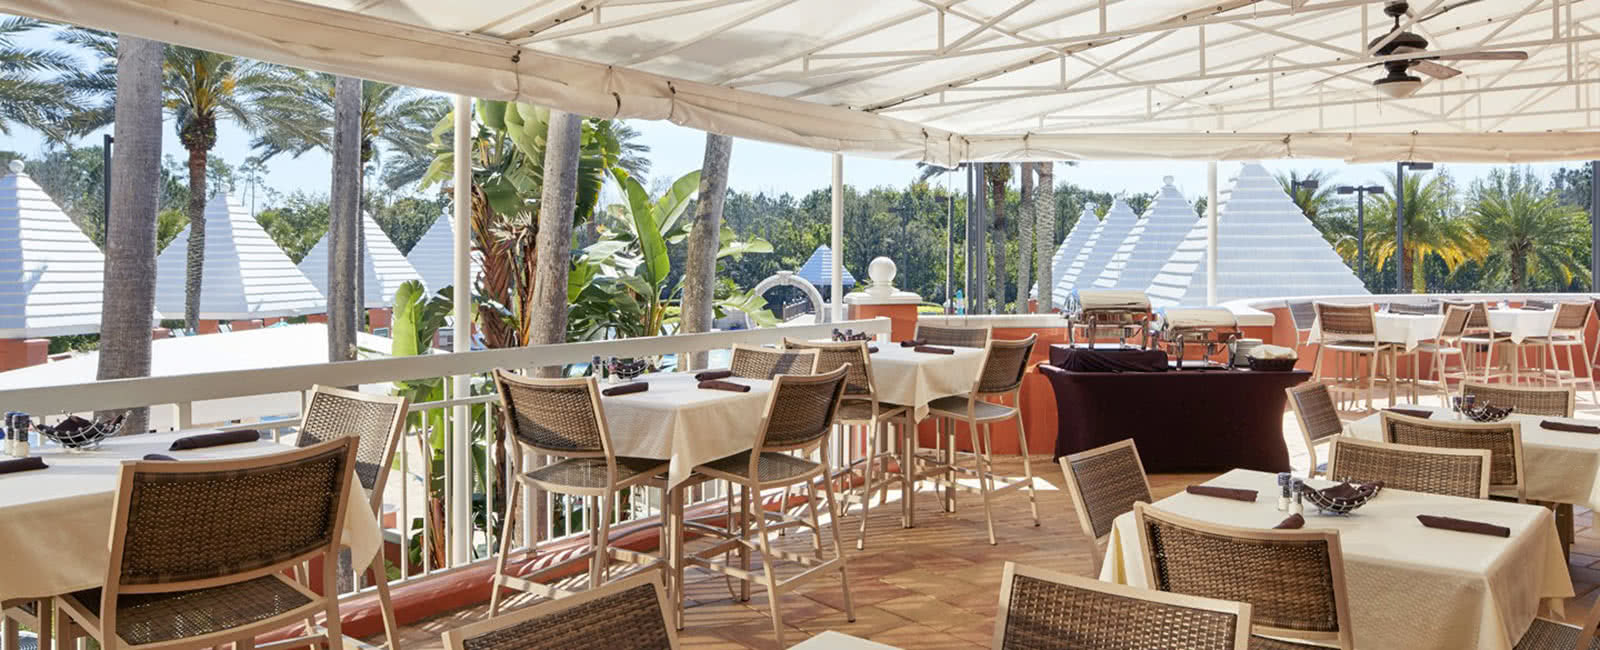 Restaurant at Hilton Grand Vacations Club at SeaWorld in Orlando, Florida